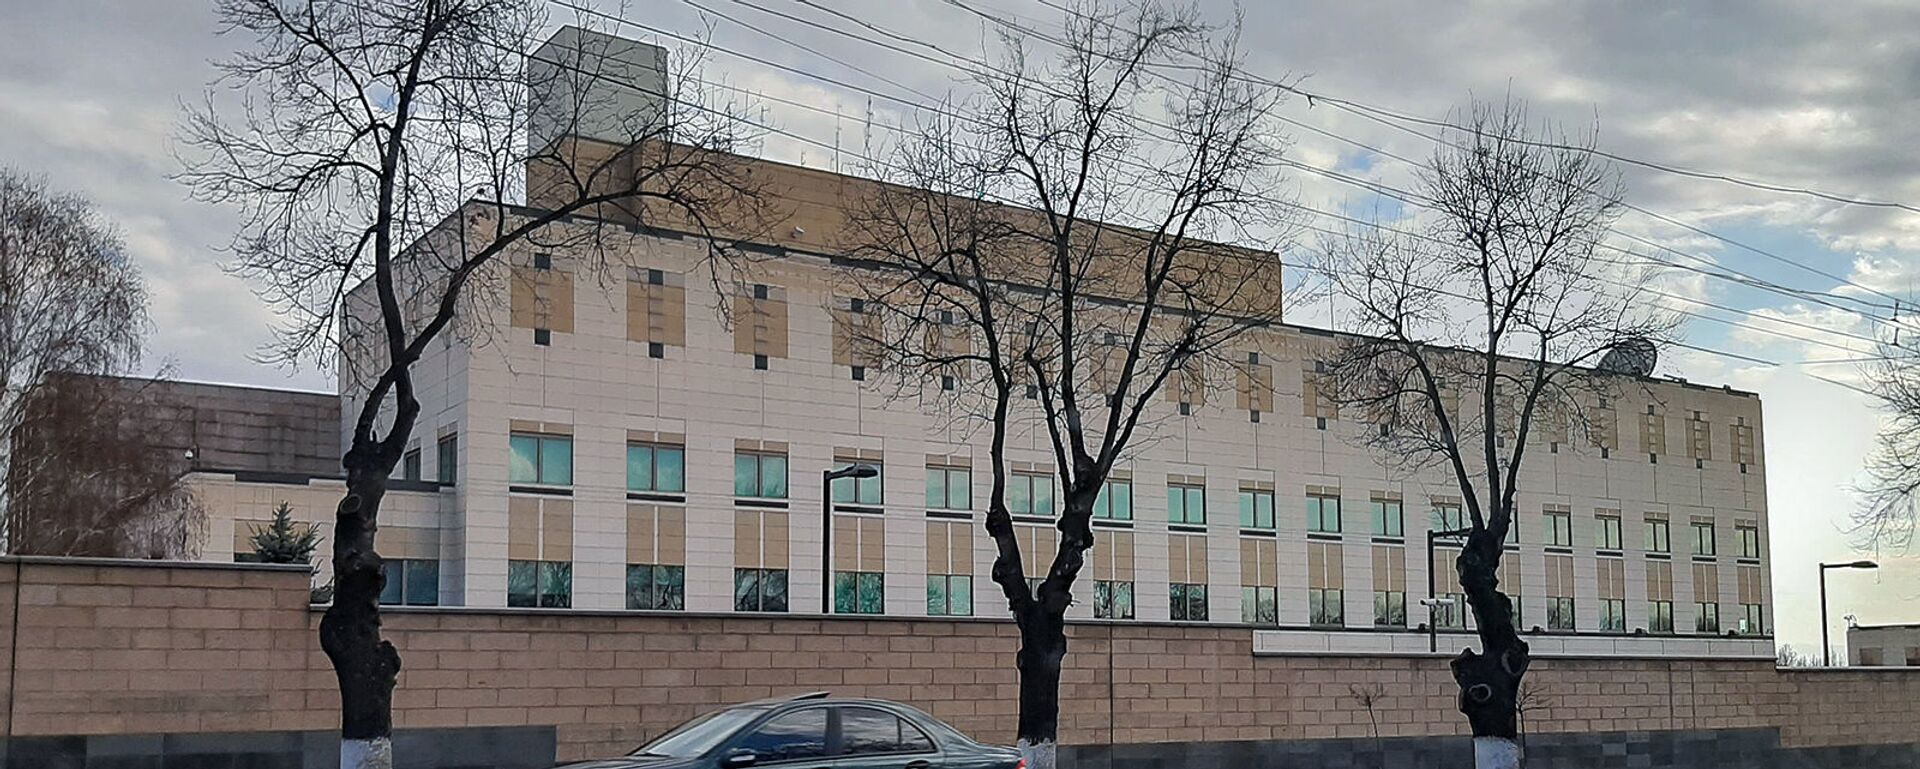 ԱՄՆ դեսպանատունը Երևանում - Sputnik Արմենիա, 1920, 07.12.2021